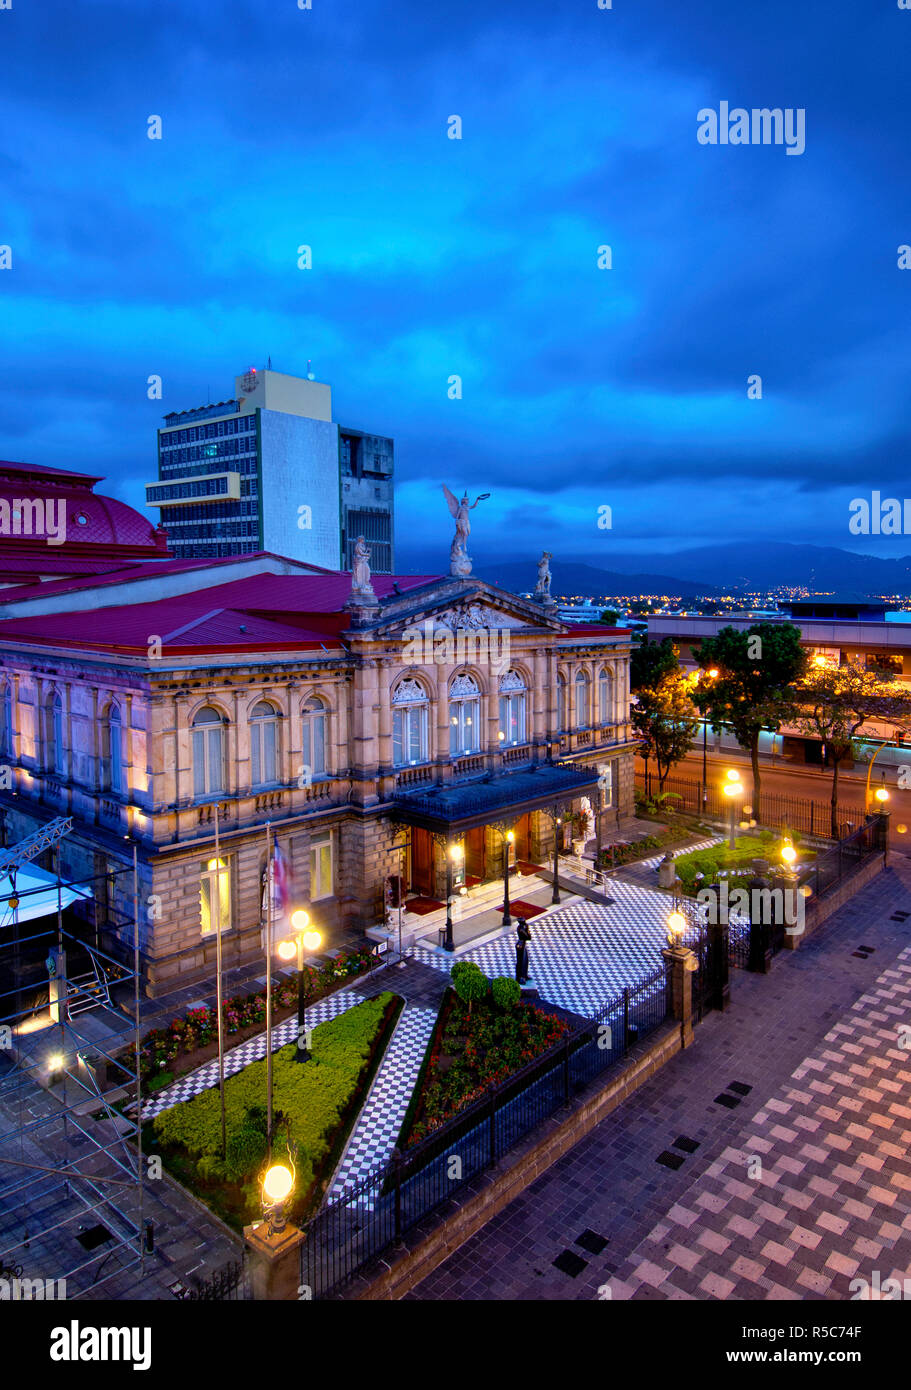 Costa Rica, San Jose, le Théâtre National, construit en 1897, le plus beau bâtiment historique de San Jose, basé sur le format VST2.0 de l'Opéra de Paris, La Place de la culture, de l'aube Banque D'Images